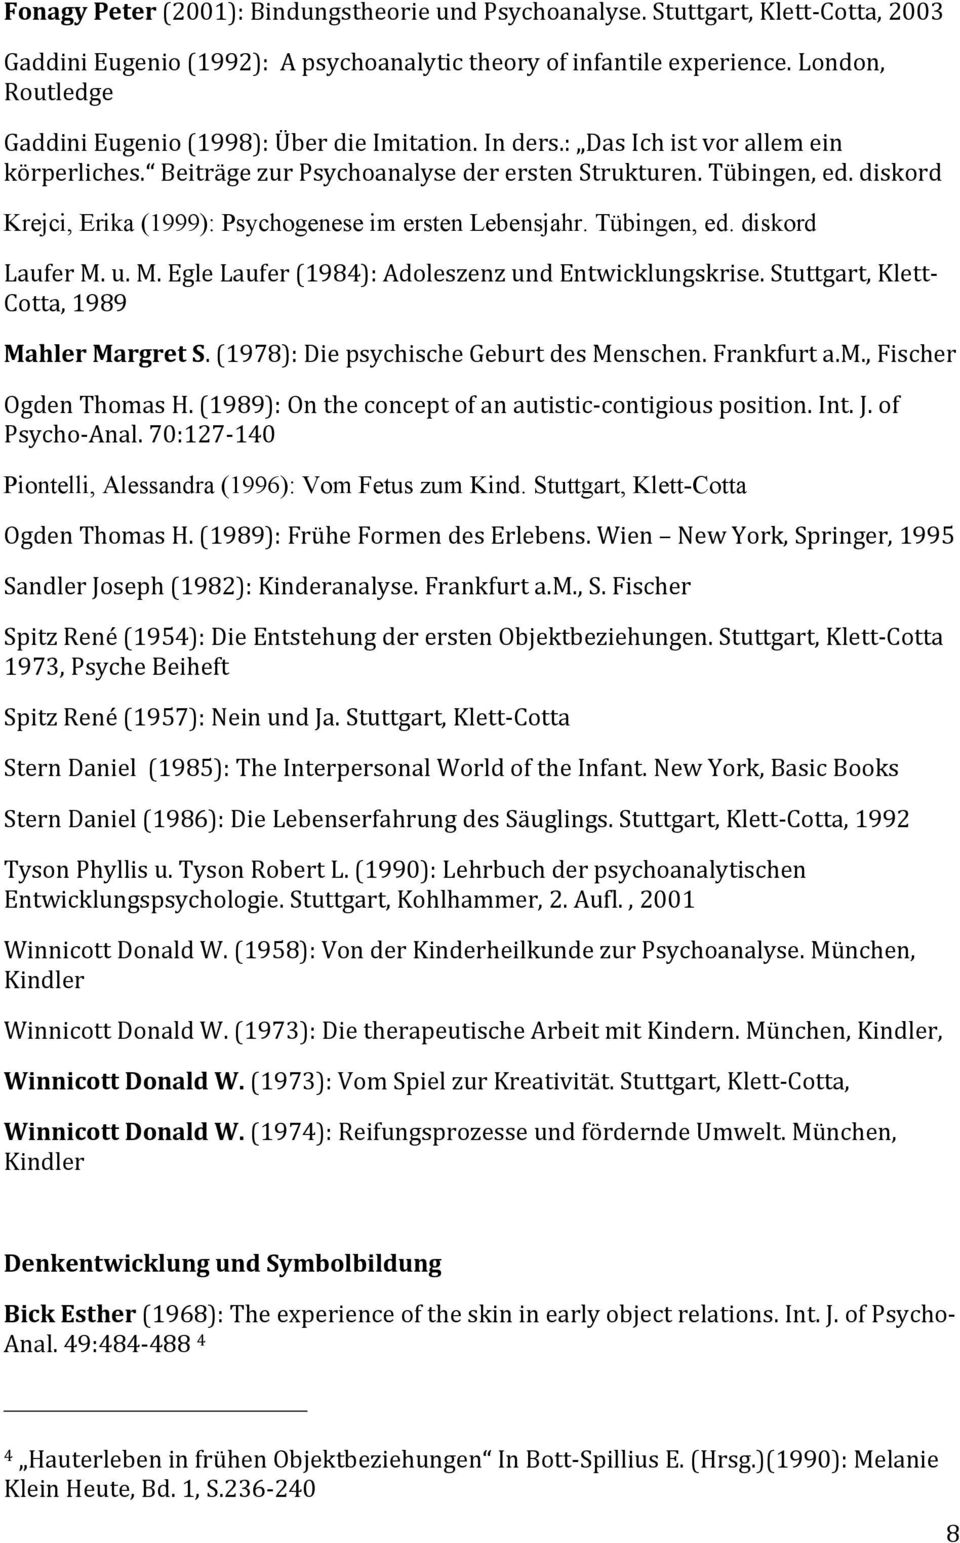 diskord Krejci, Erika (1999): Psychogenese im ersten Lebensjahr. Tübingen, ed. diskord Laufer M. u. M. Egle Laufer (1984): Adoleszenz und Entwicklungskrise.